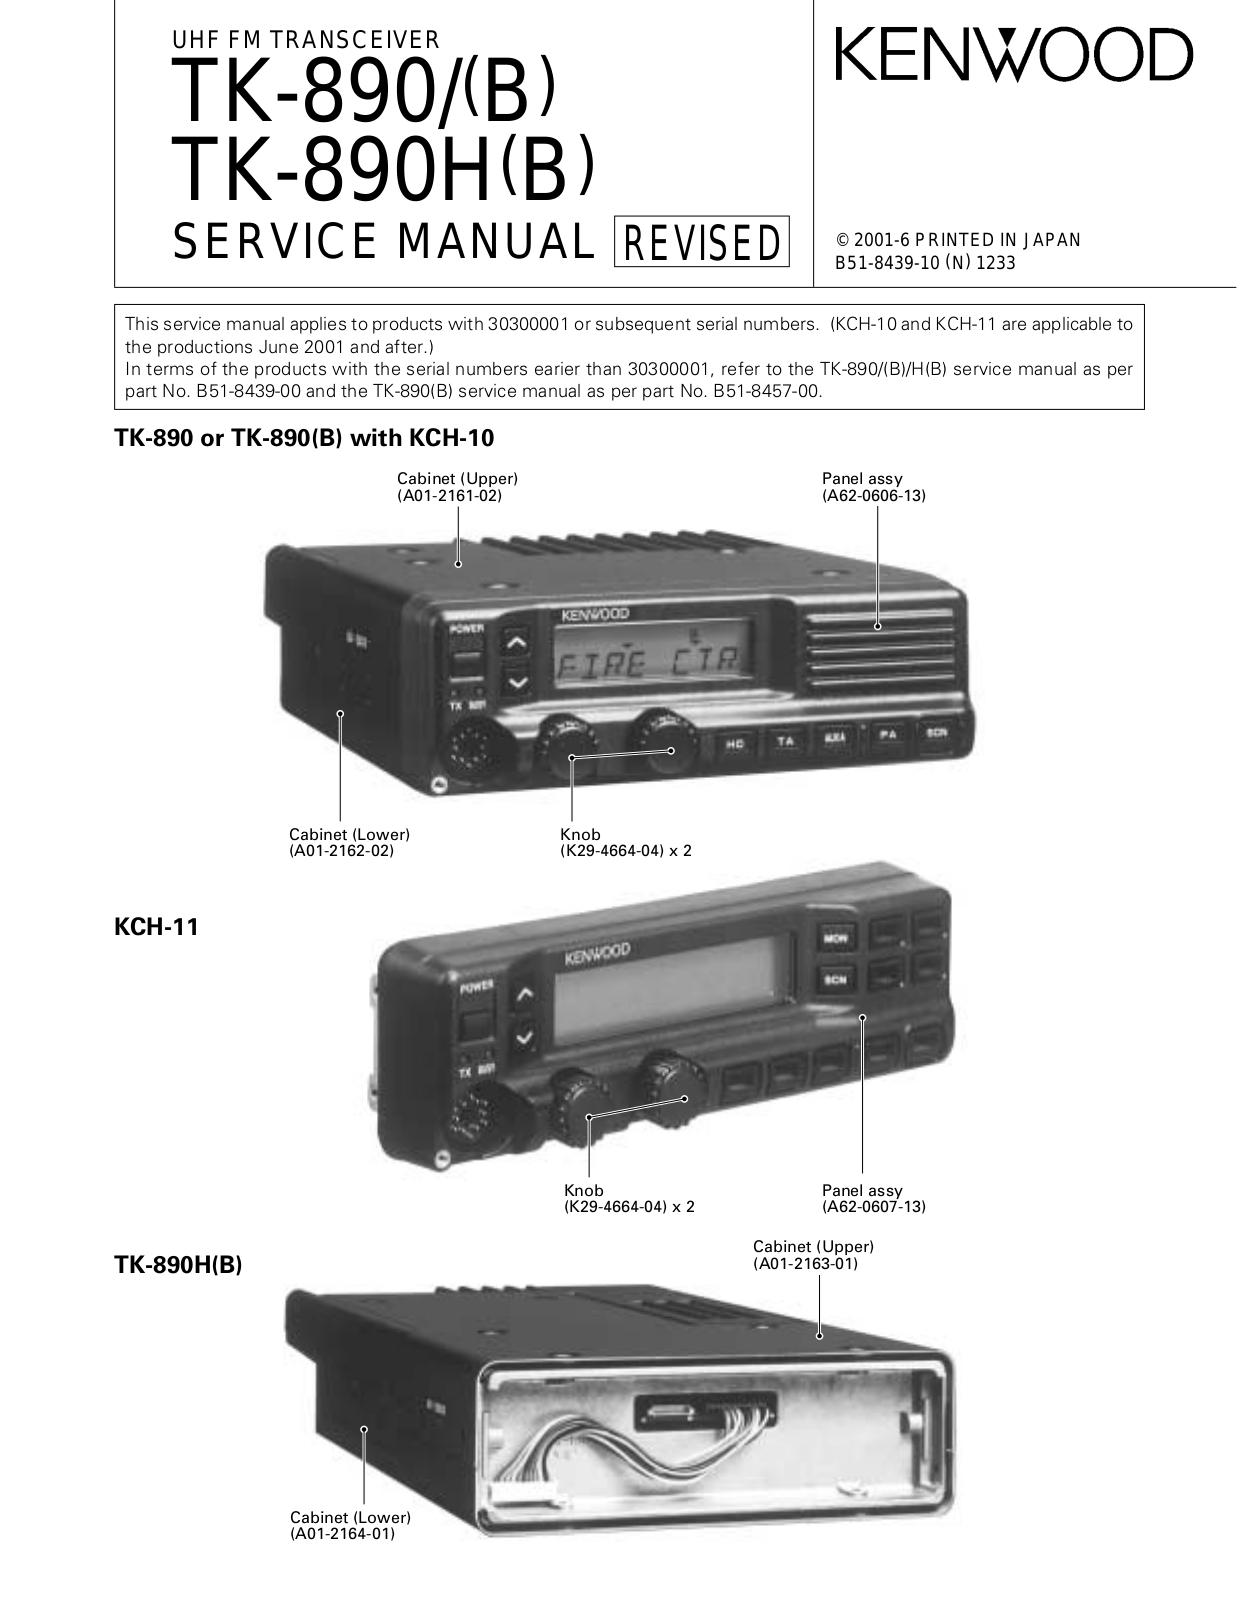 Kenwood TK-890H, TK-890 Service Manual